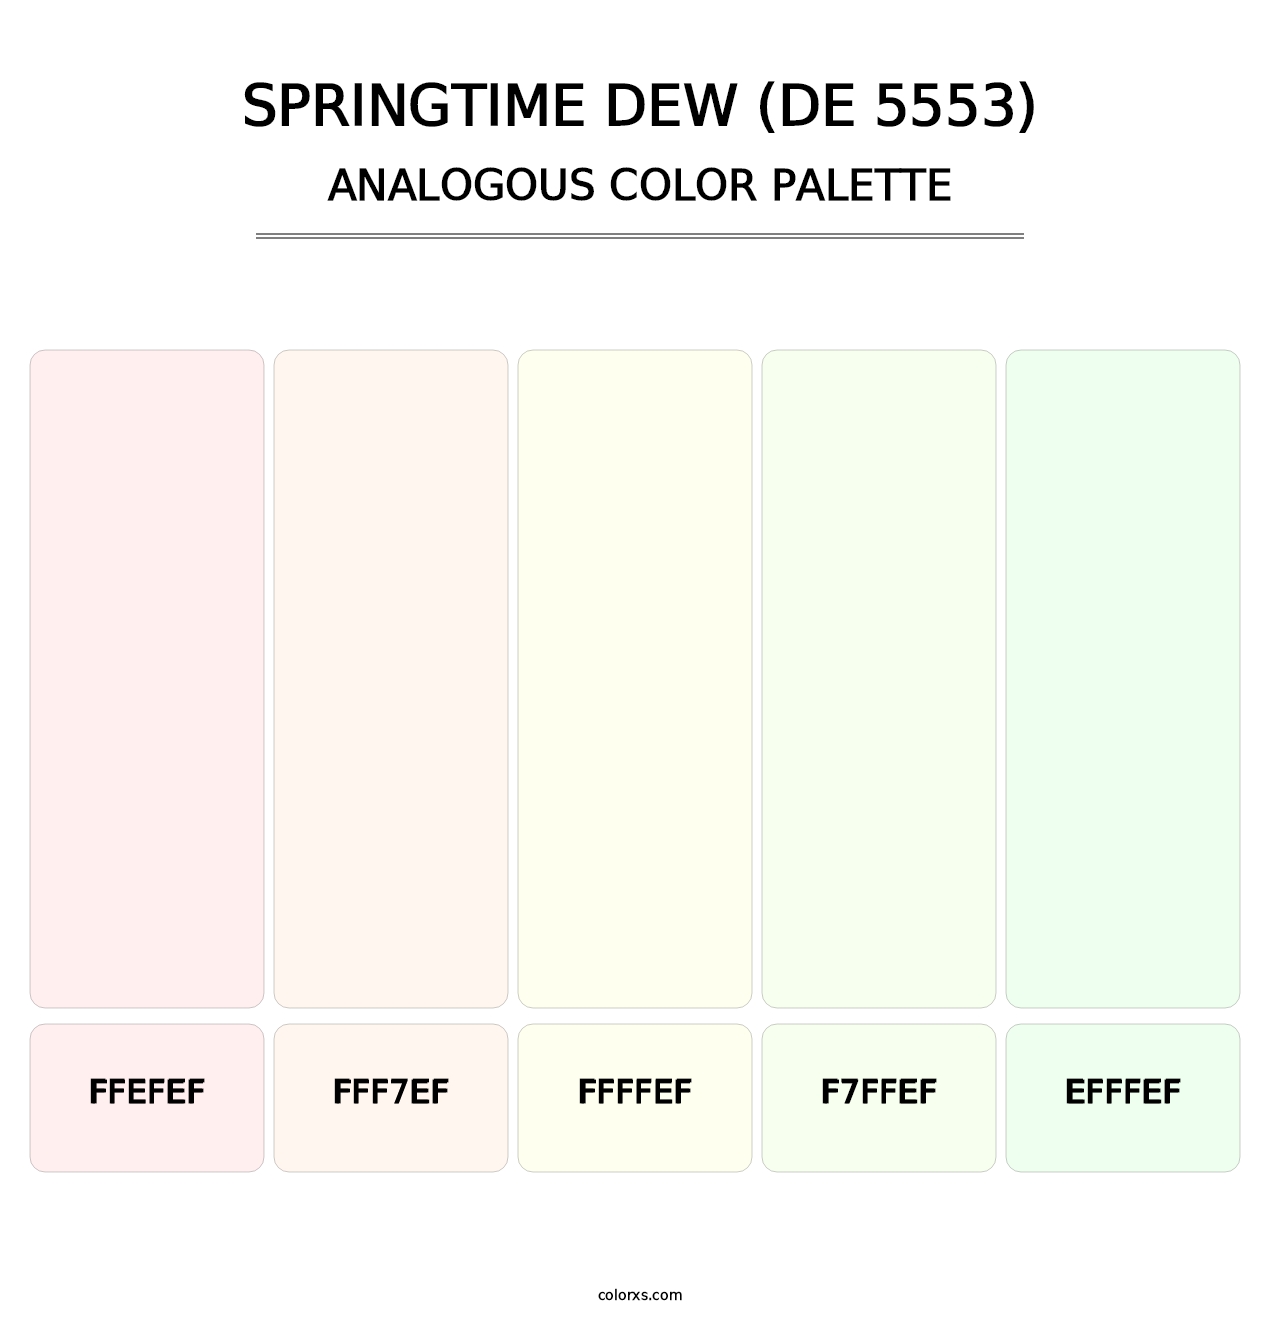 Springtime Dew (DE 5553) - Analogous Color Palette